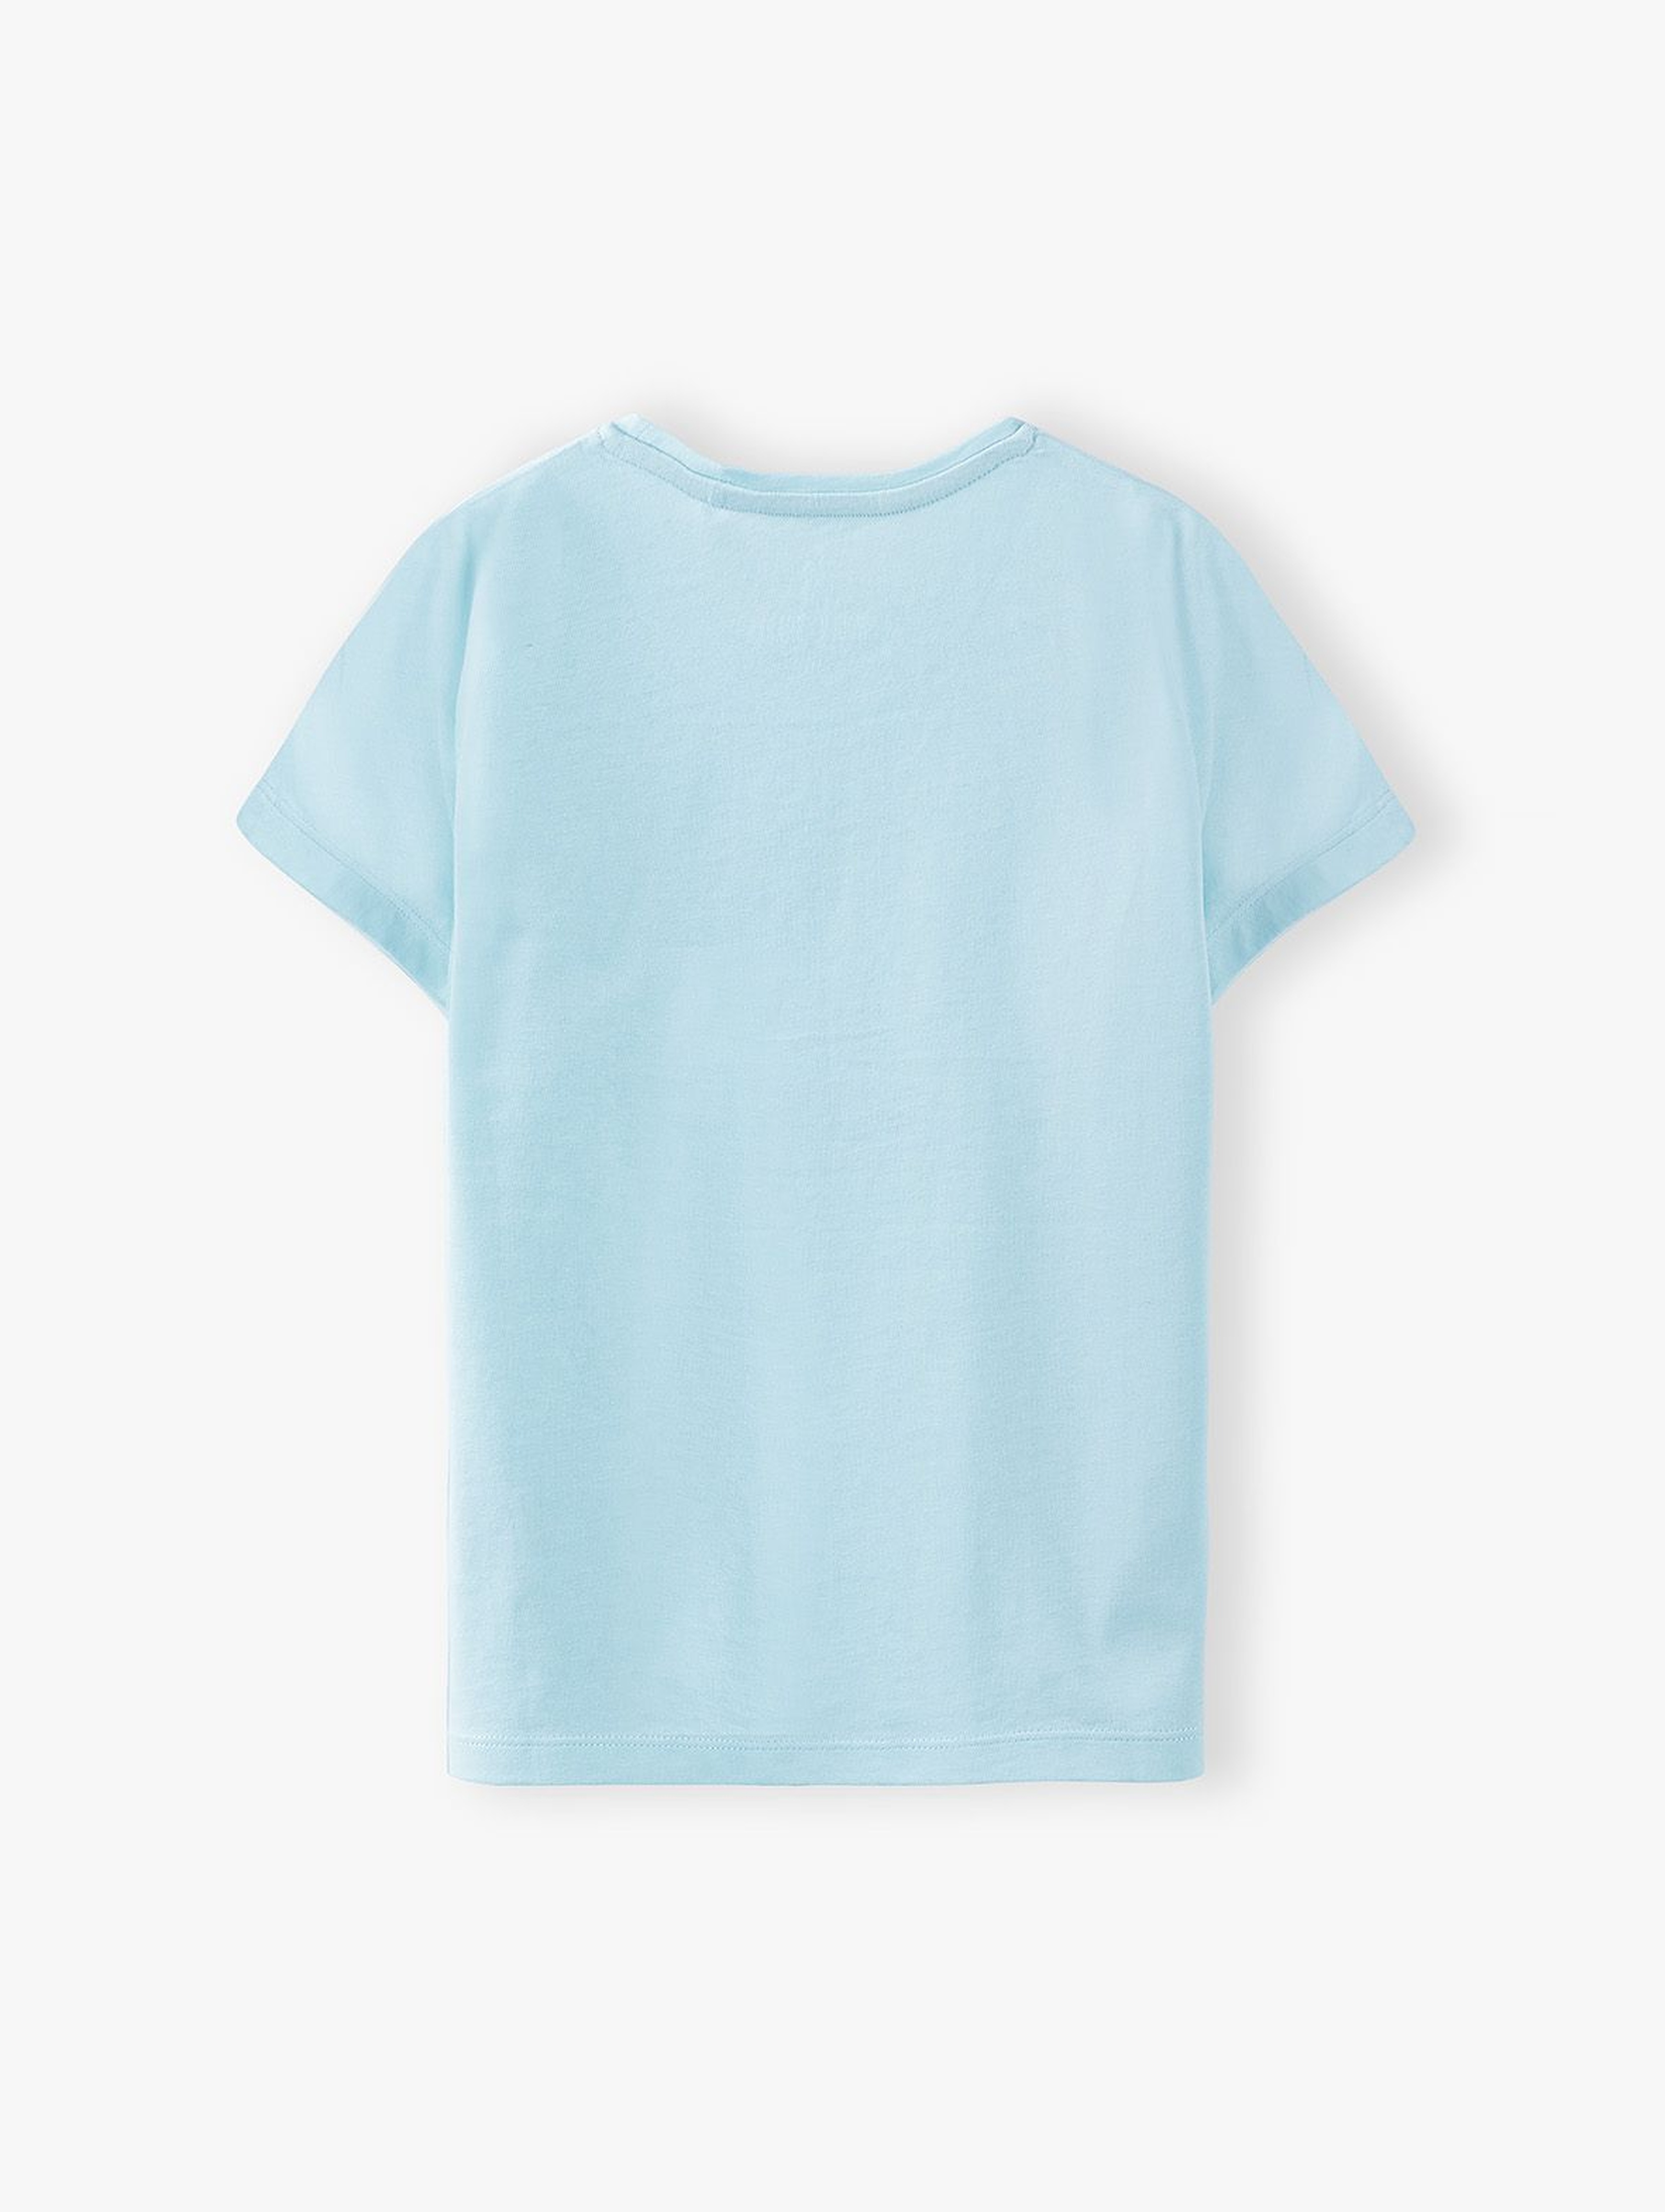 T- shirt dziewczęcy z napisem Sun Salt Sand - niebieski